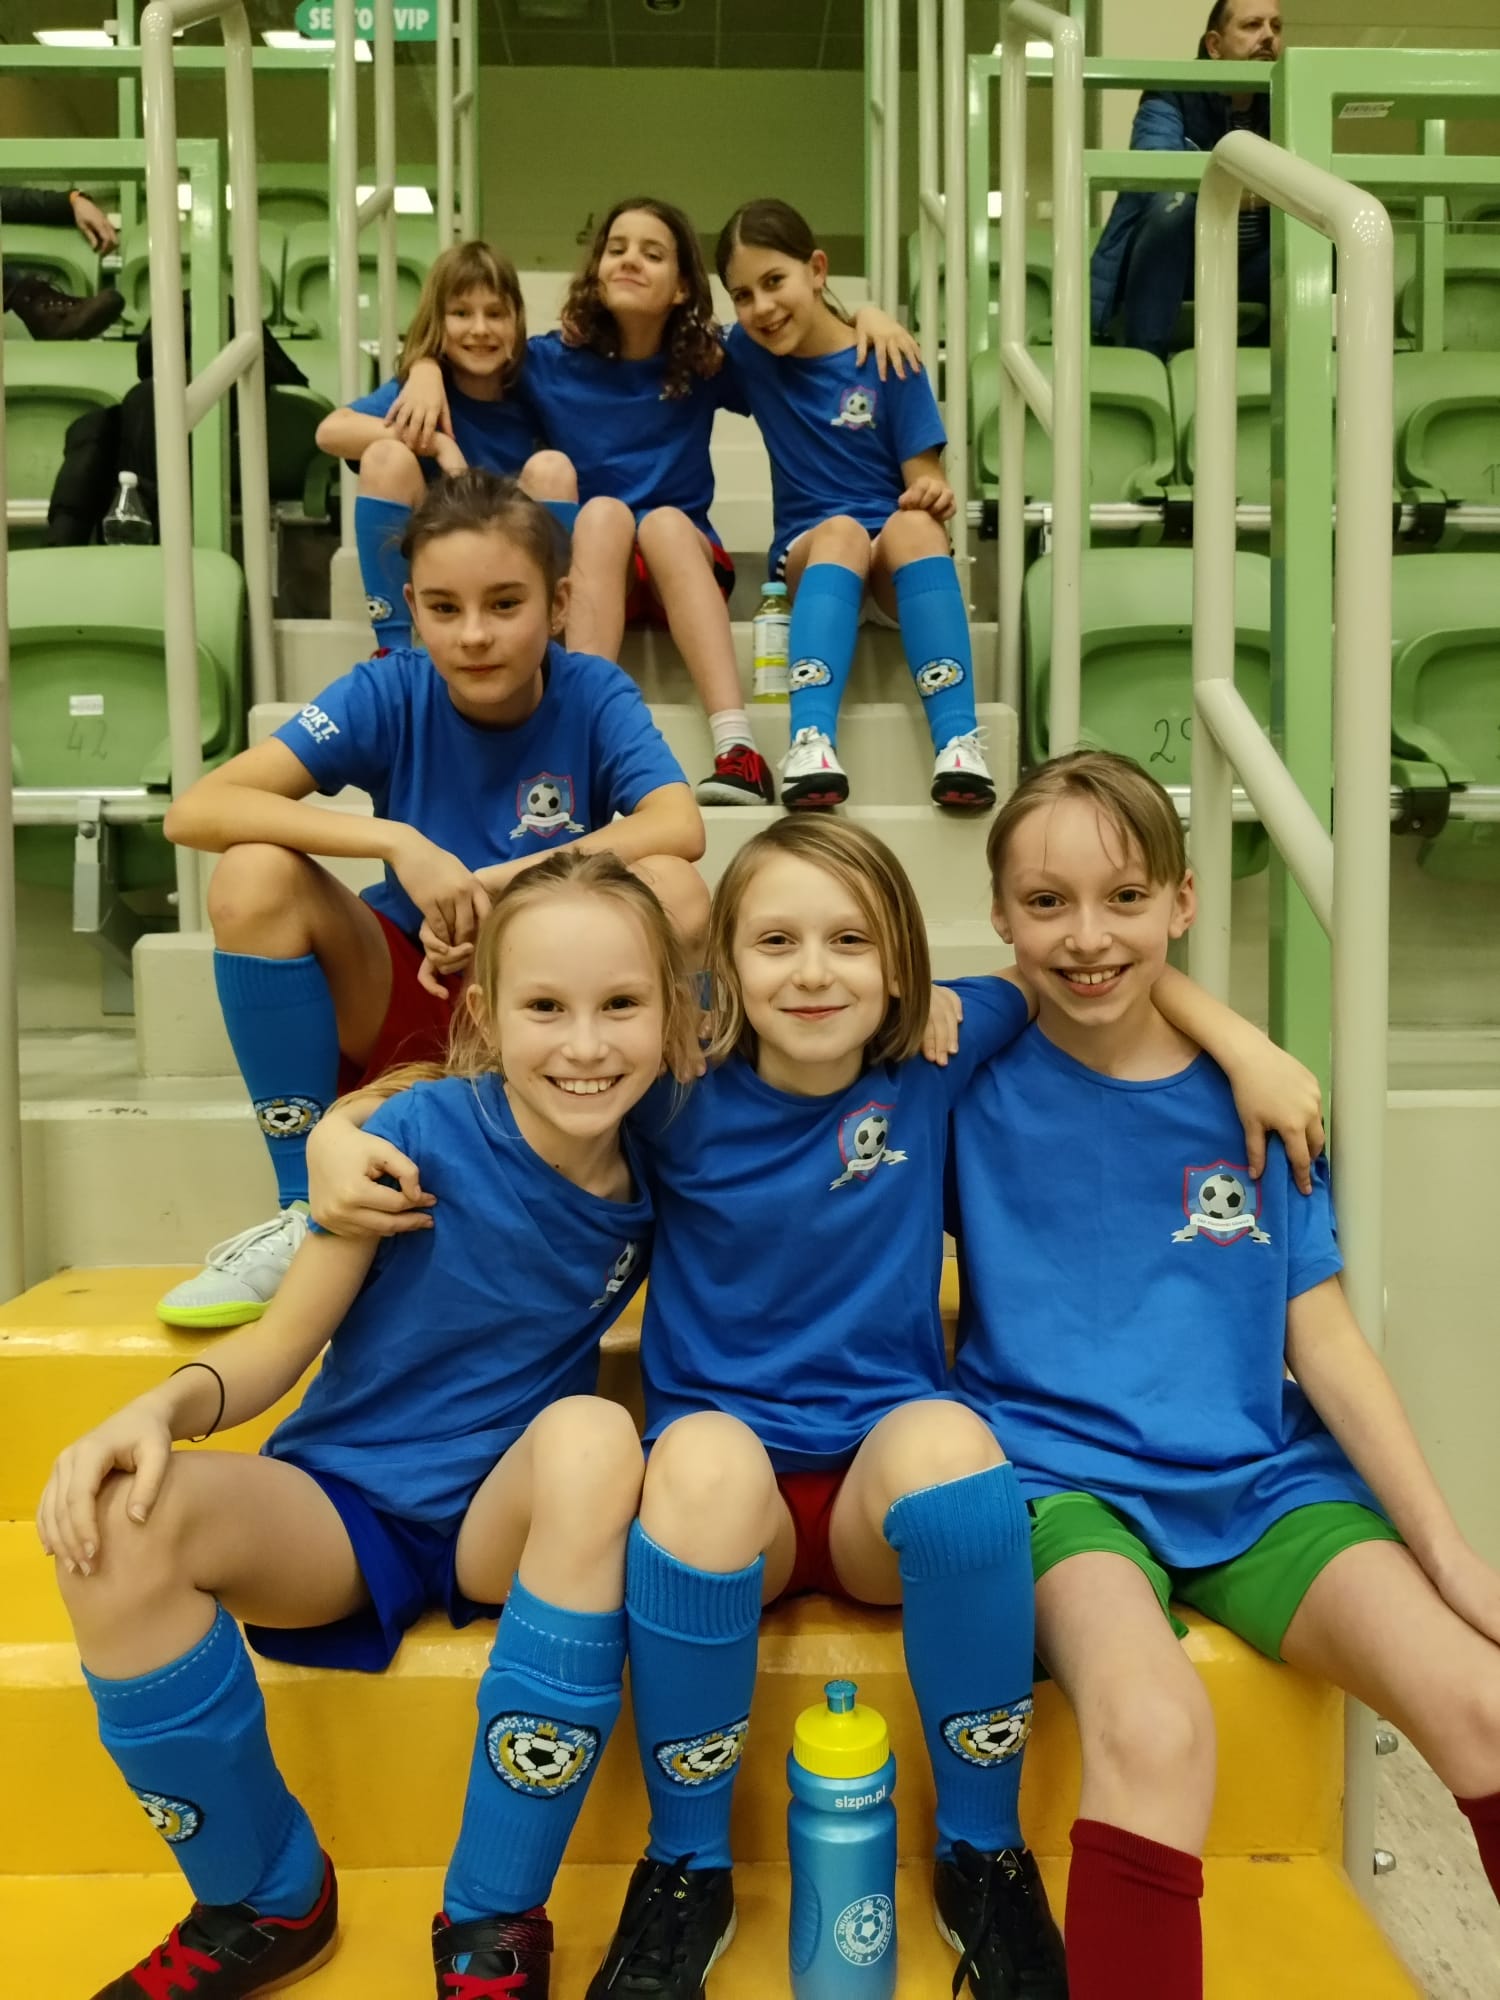 Dziewczyny z Gliwic grają w piłkę nożną